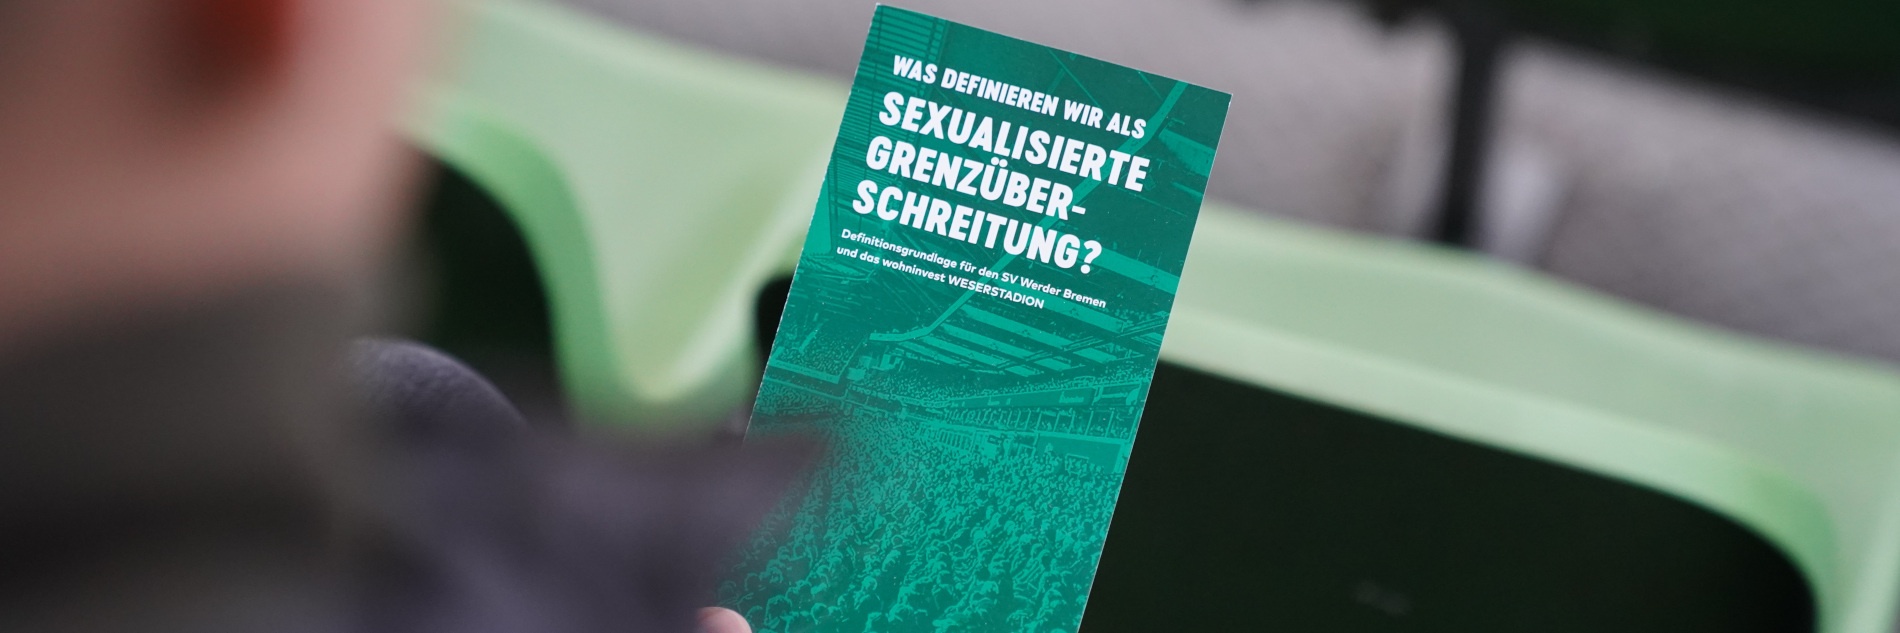 Person hält Flyer mit "Was definieren wir als sexualisierte Grenzüberschreitung?"-Schriftzug in der Hand.